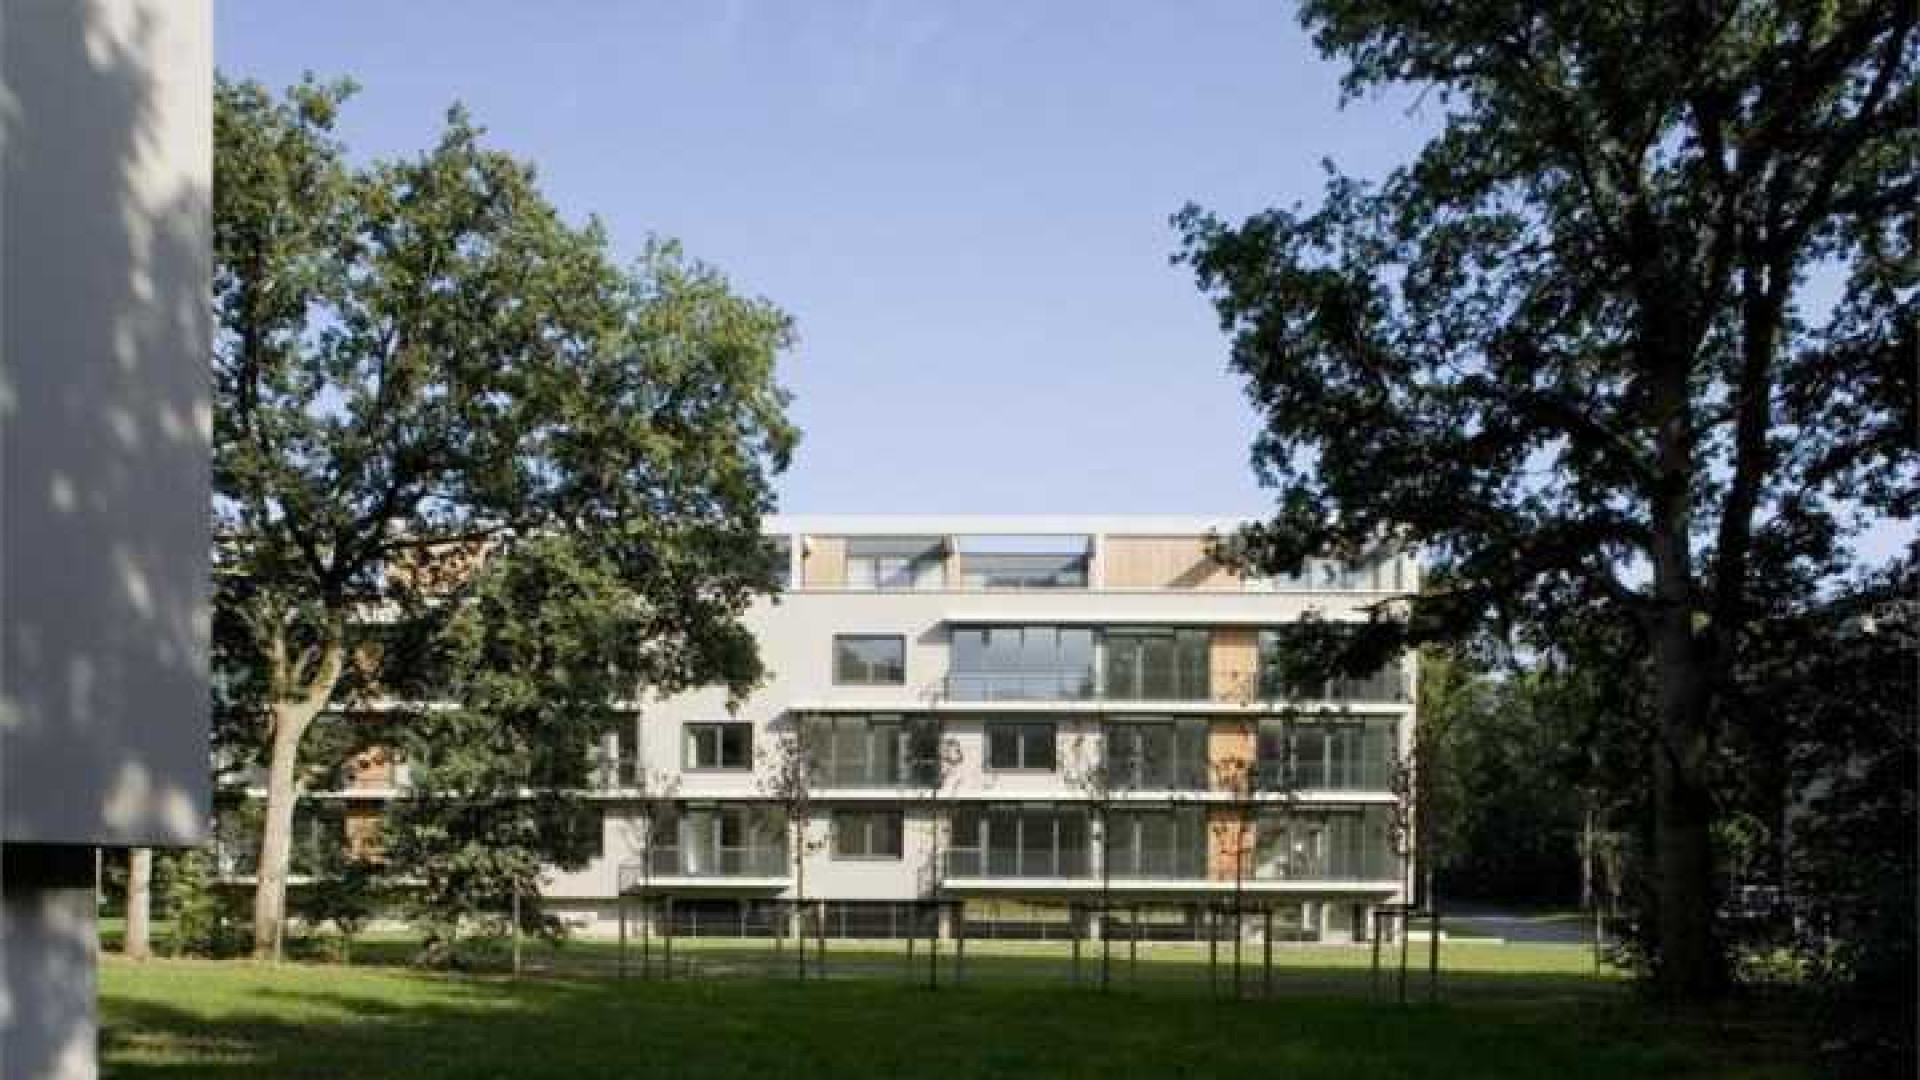 Ilse de Lange huurt luxe penthouse in Hilversum. Zie foto's 12